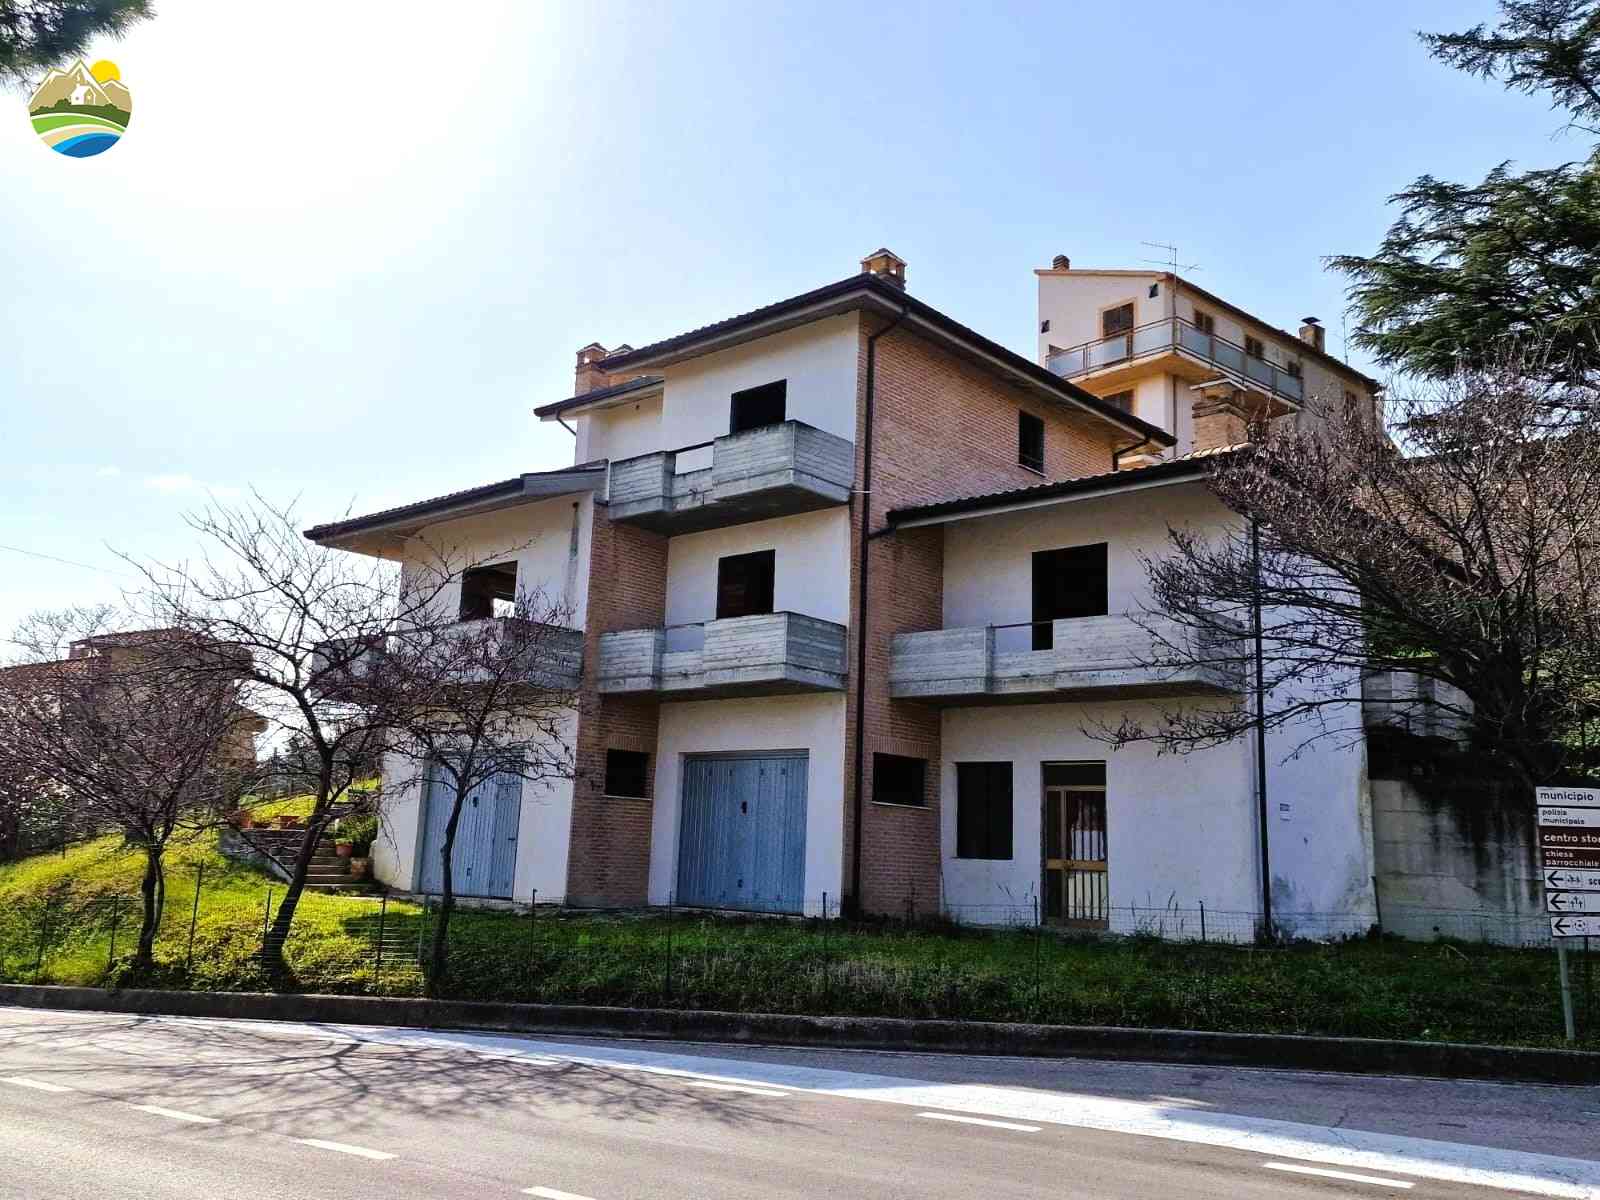 Villa Villa Mandorlo - Castilenti - EUR 128.700